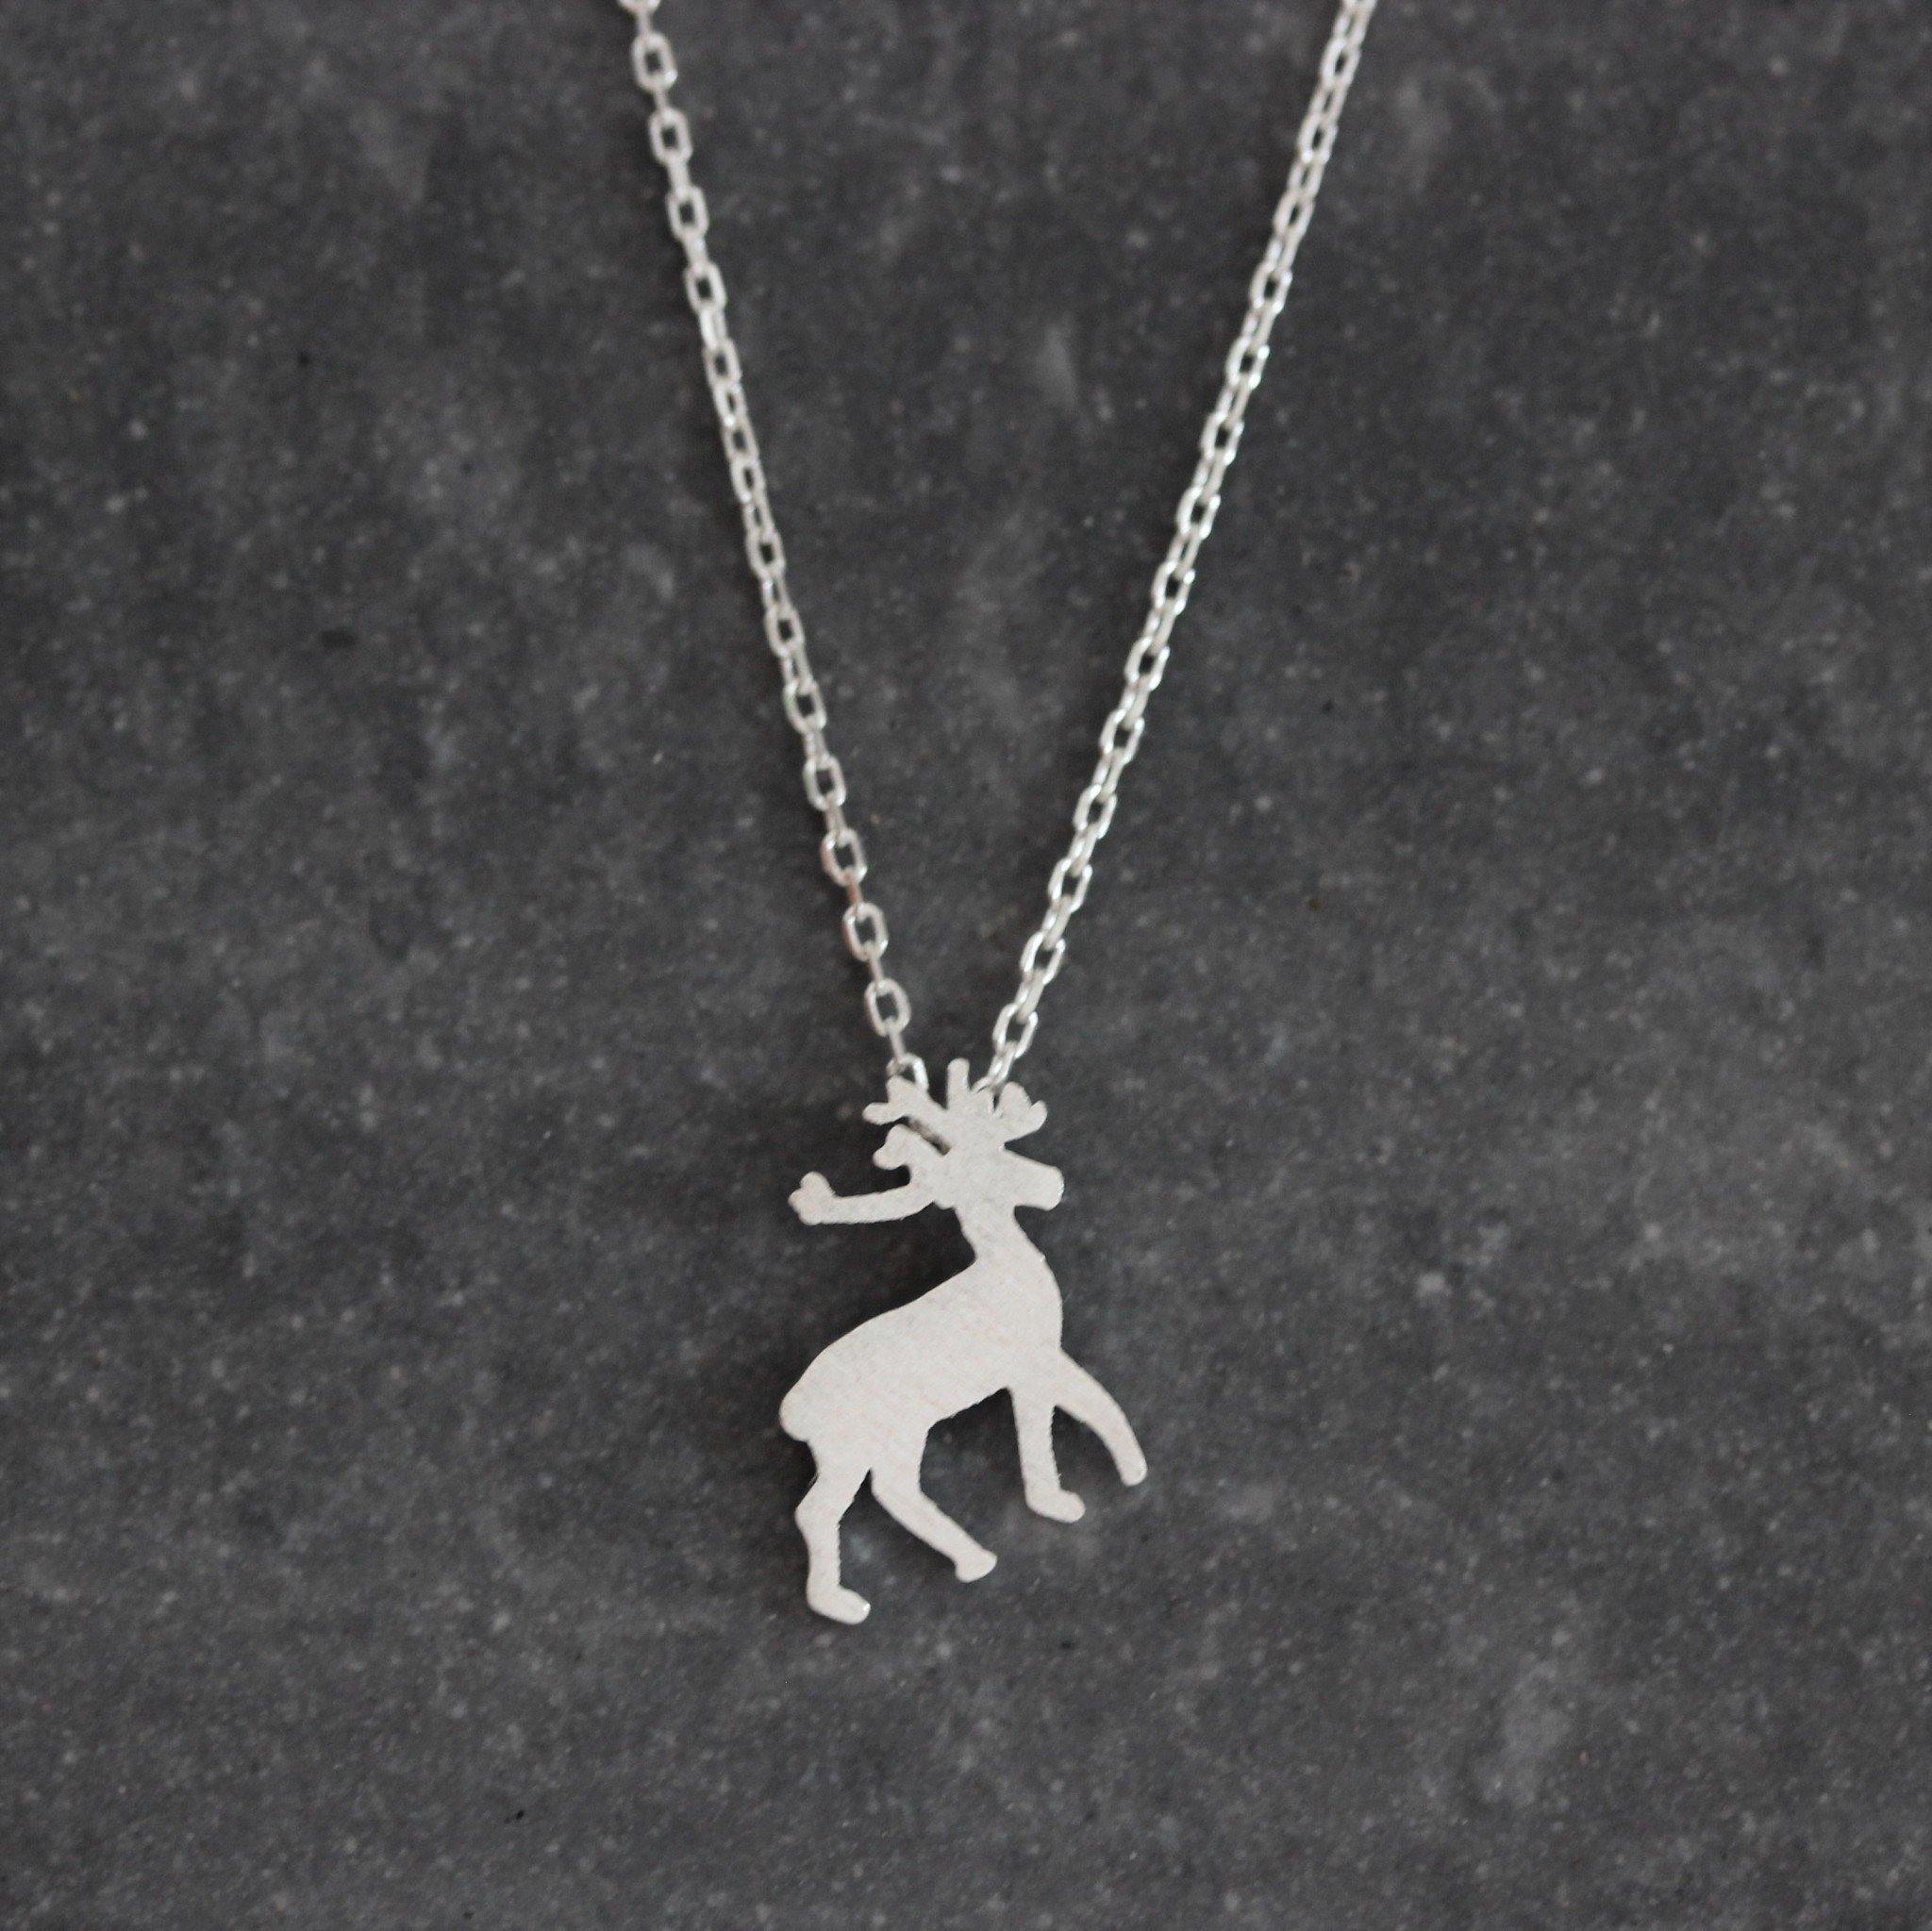 Genuine Sterling Silver 925 Elk Deer Brushed Matt Finish Necklace 40cm + 5cm Ext - STERLING SILVER DESIGNS